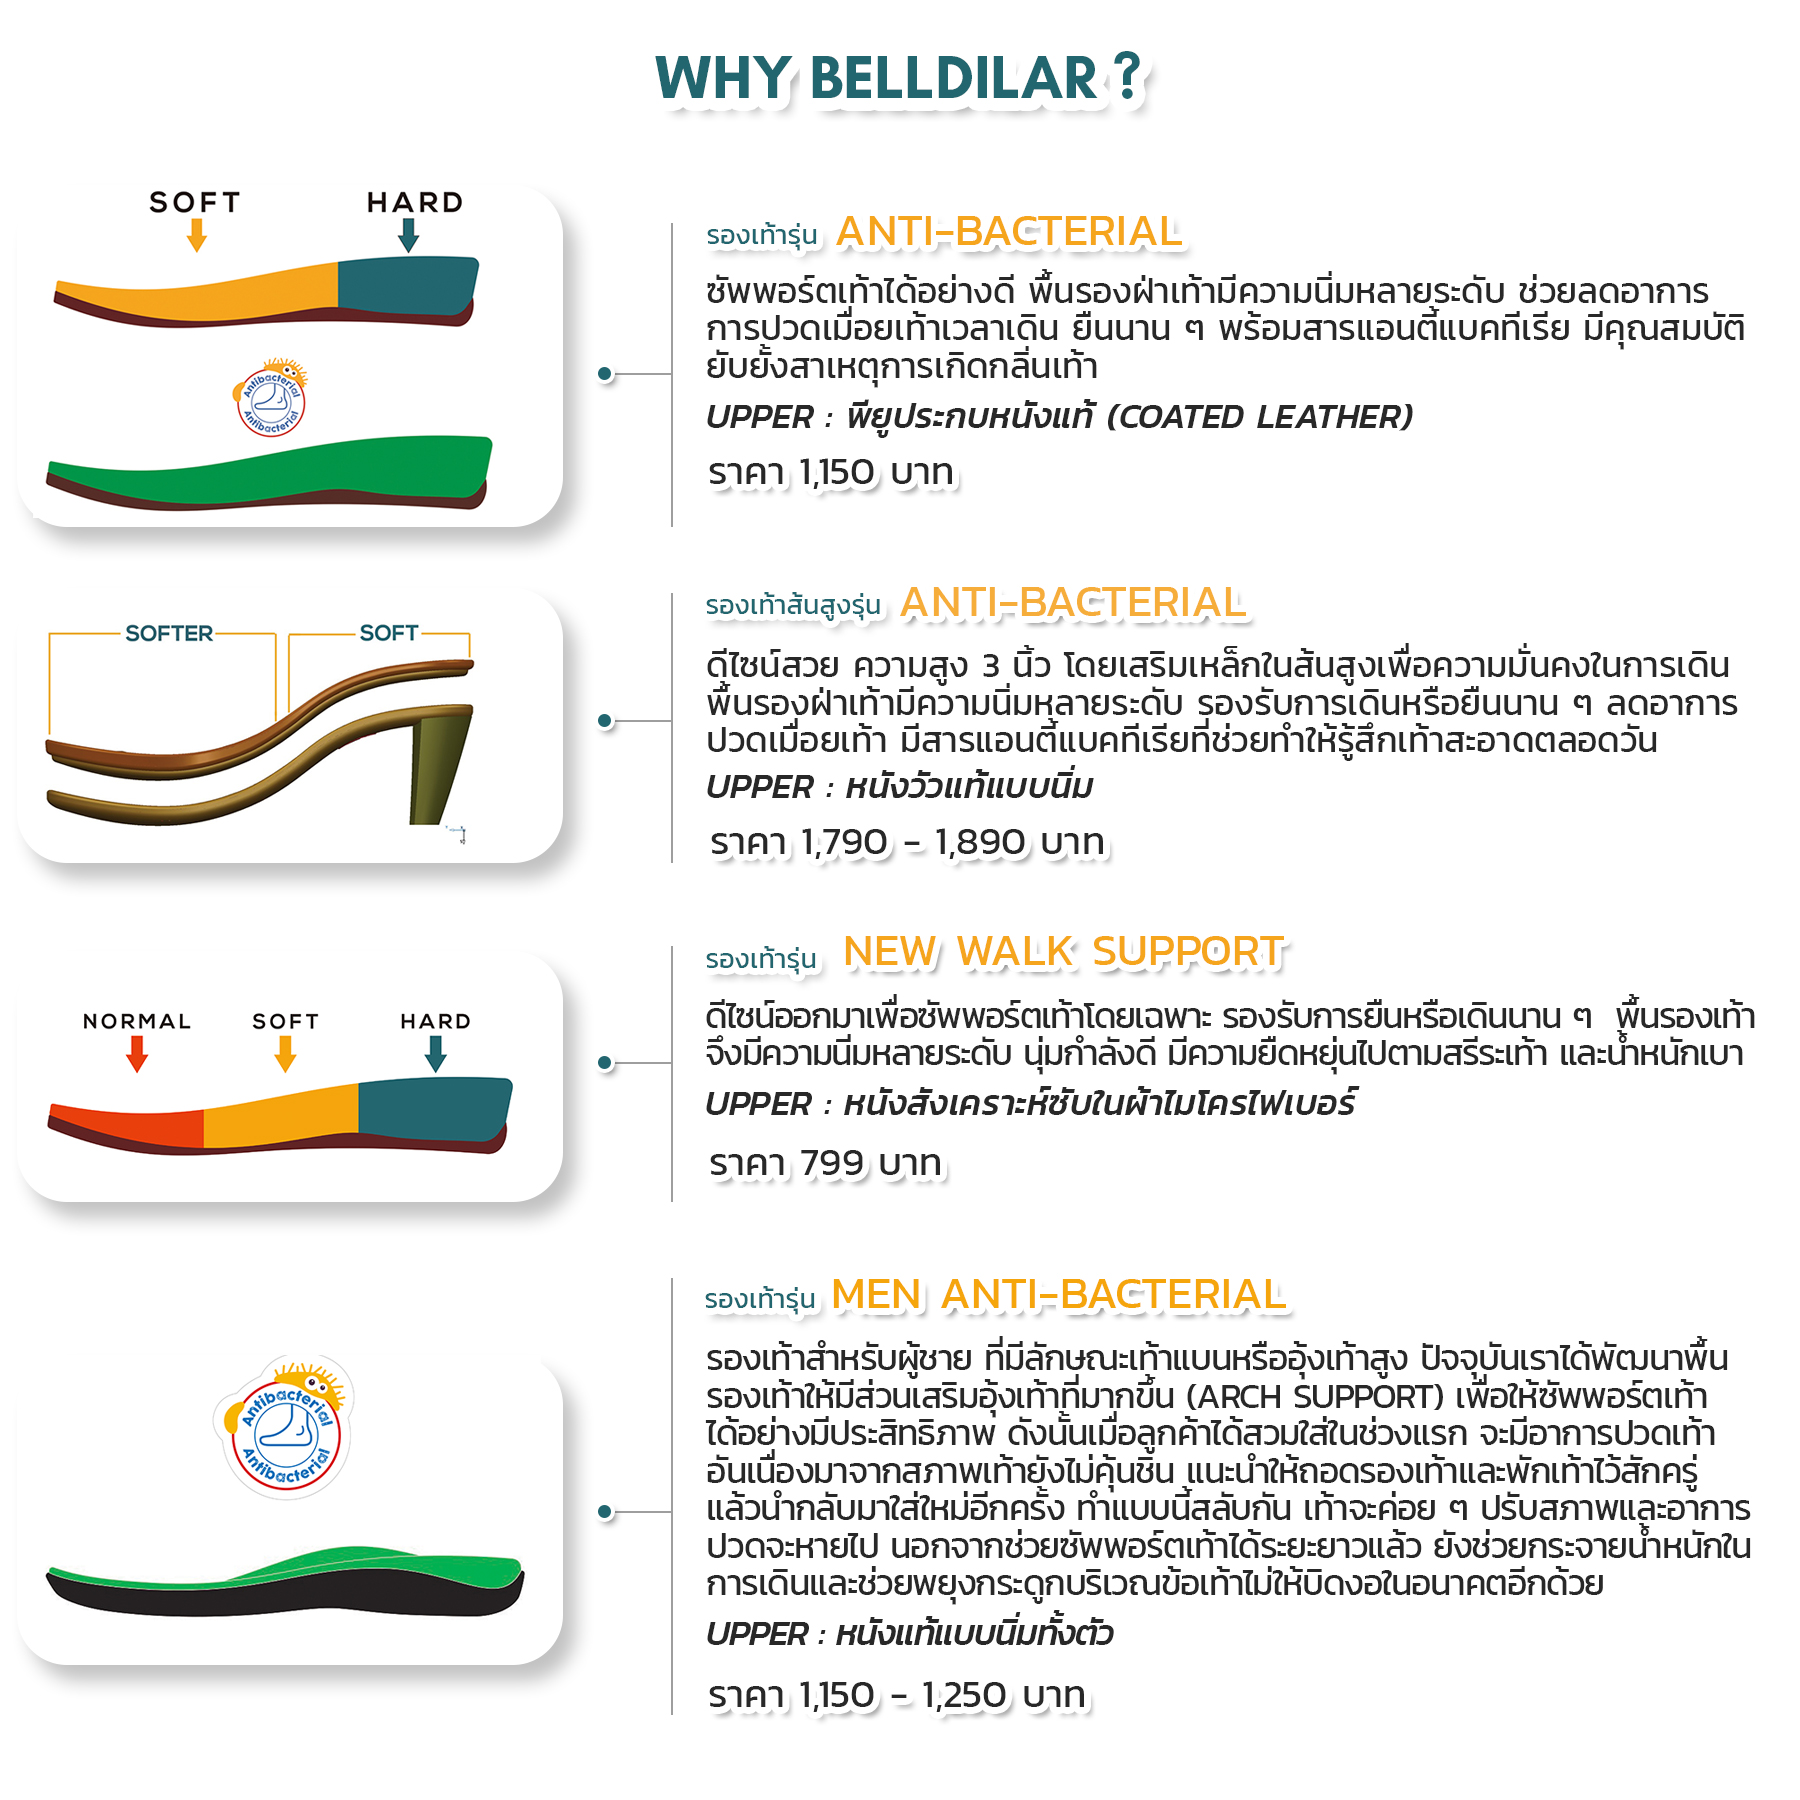 รองเท้า Belldilar แต่ละรุ่น แตกต่างกันอย่างไร